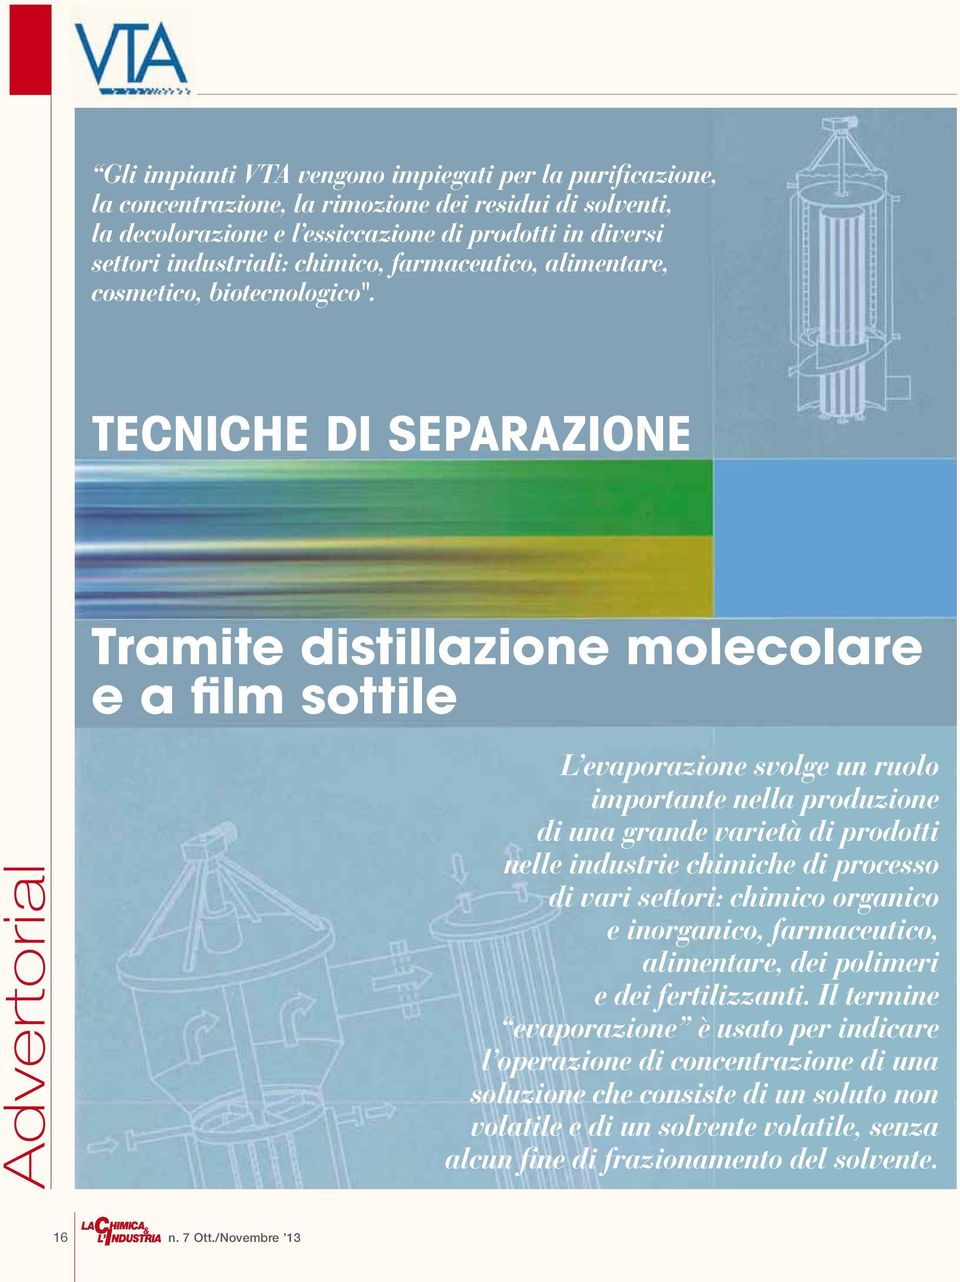 Tecniche di separazione Tramite distillazione molecolare e a film sottile L evaporazione svolge un ruolo importante nella produzione di una grande varietà di prodotti nelle industrie chimiche